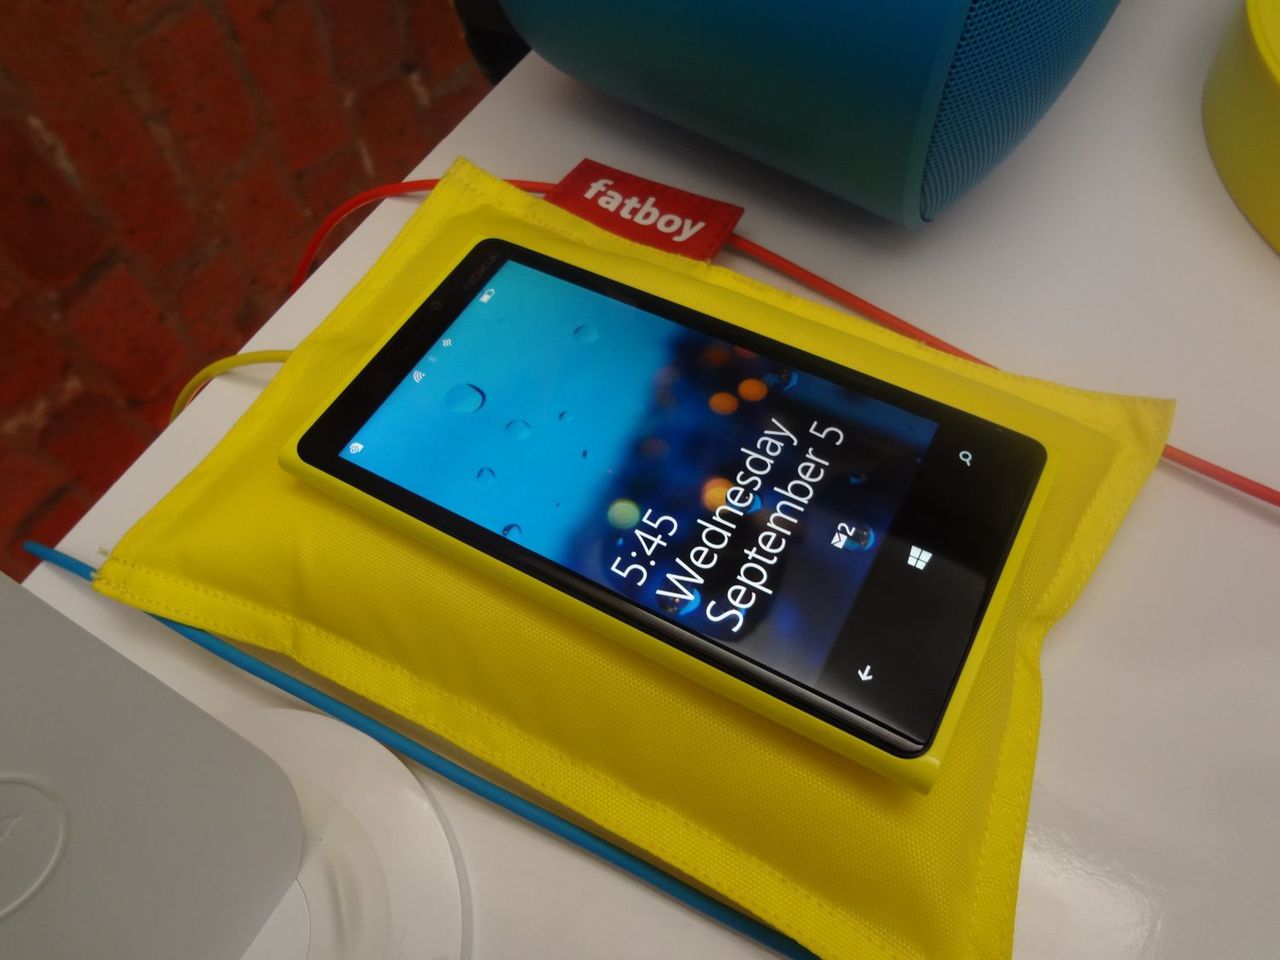 Nokia Lumia 920 (fot. wł)